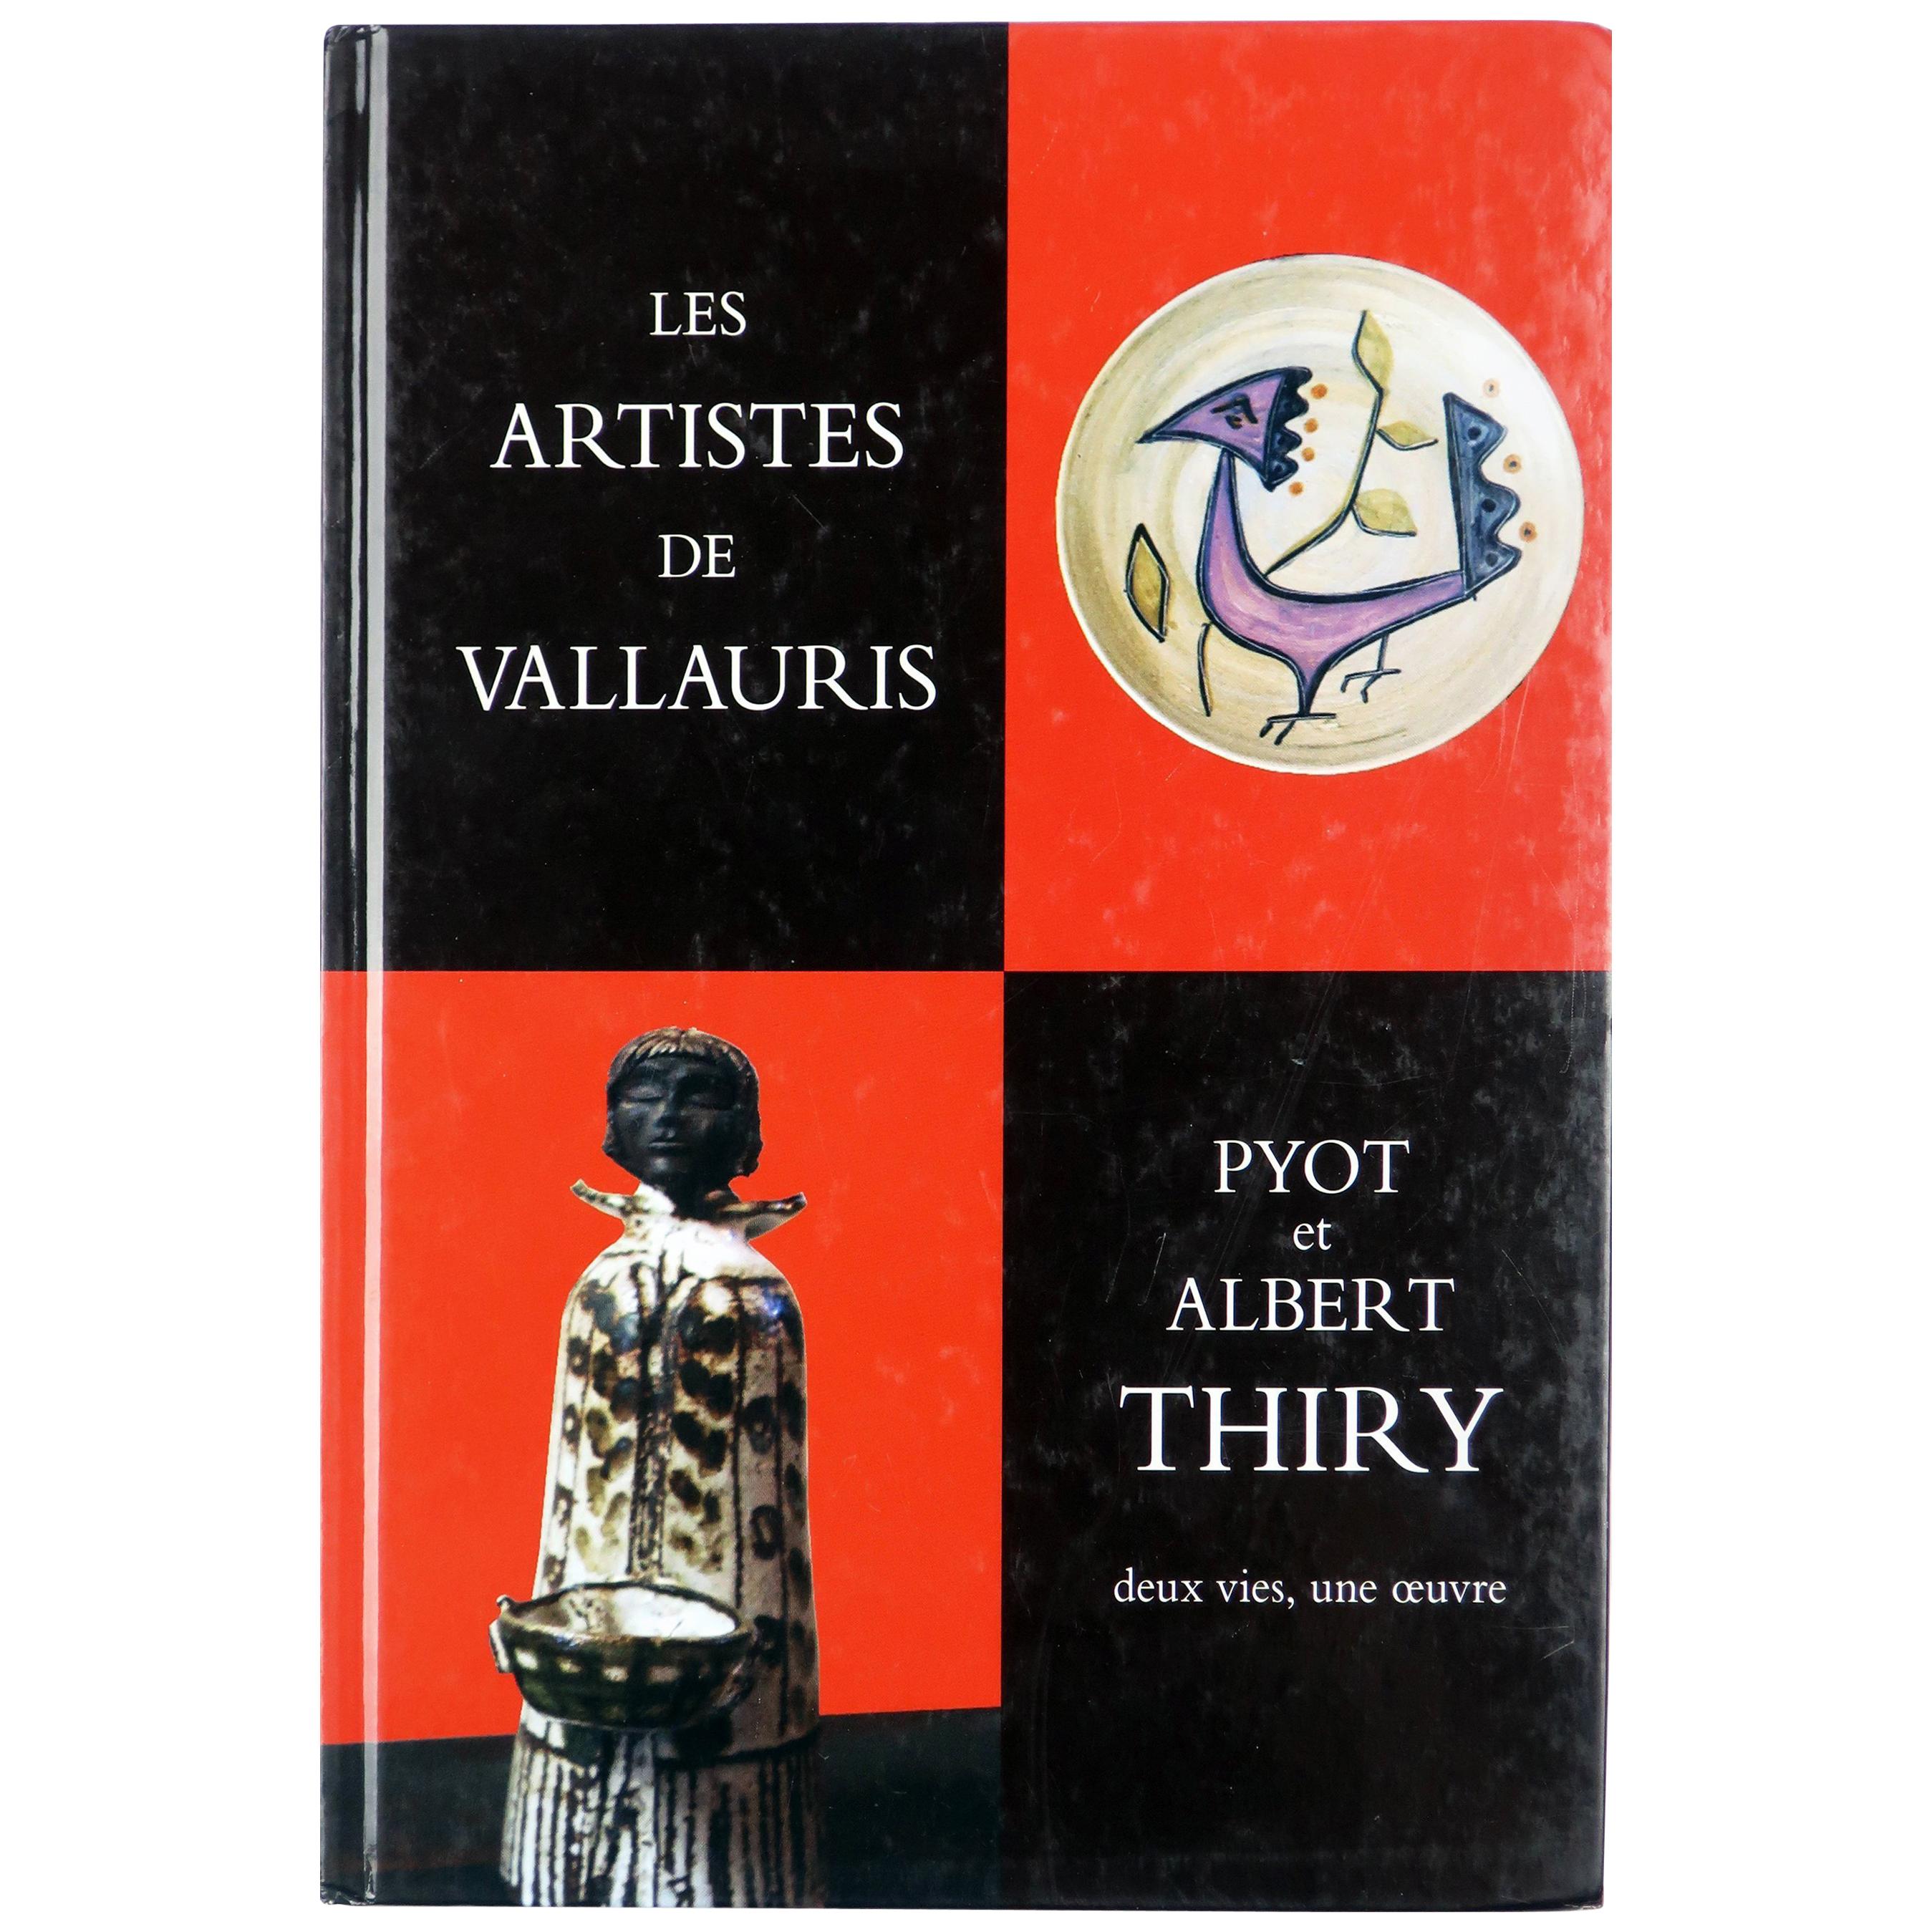 “Les Artistes de Vallauris: Pyot et Albert Thiry" by Marie-Pascale Suhard